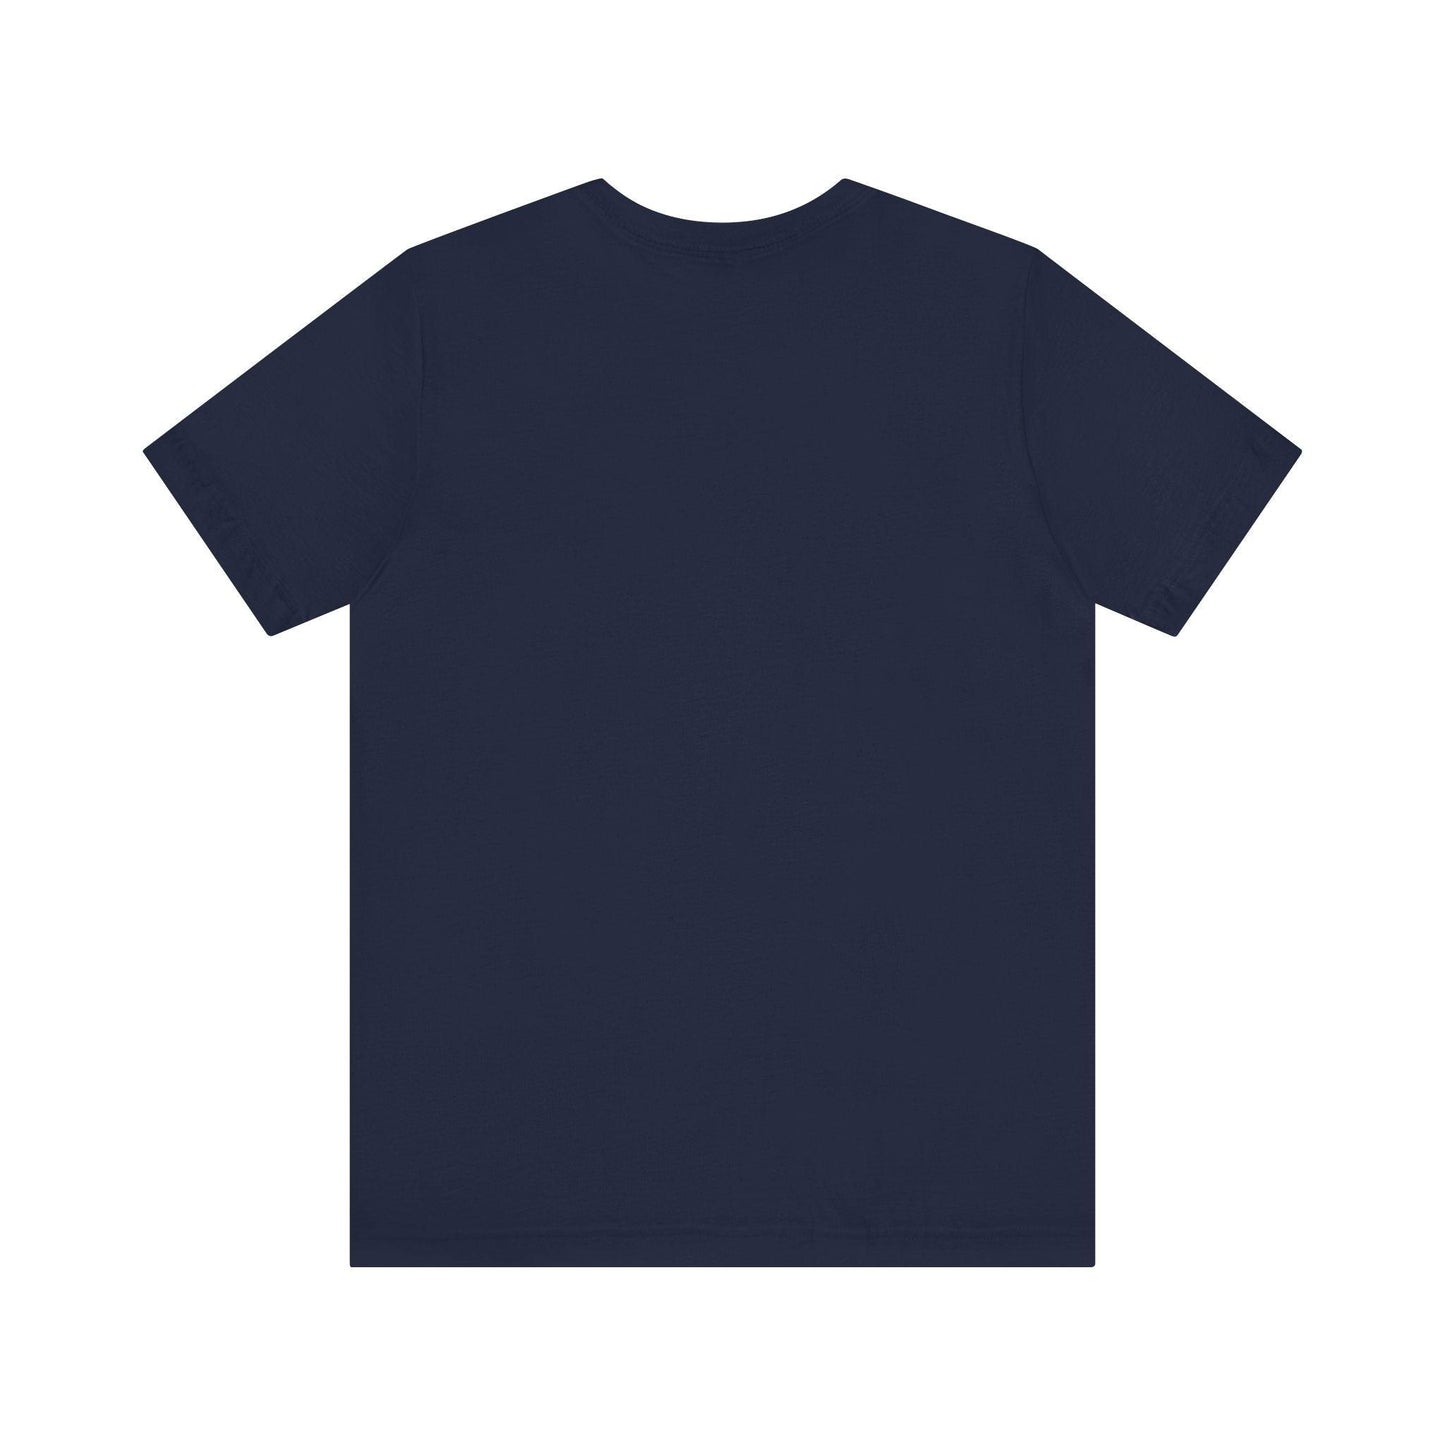 Unisex Jersey Short Sleeve Tee cute t shirt funny t shirt - MAK SHOP 